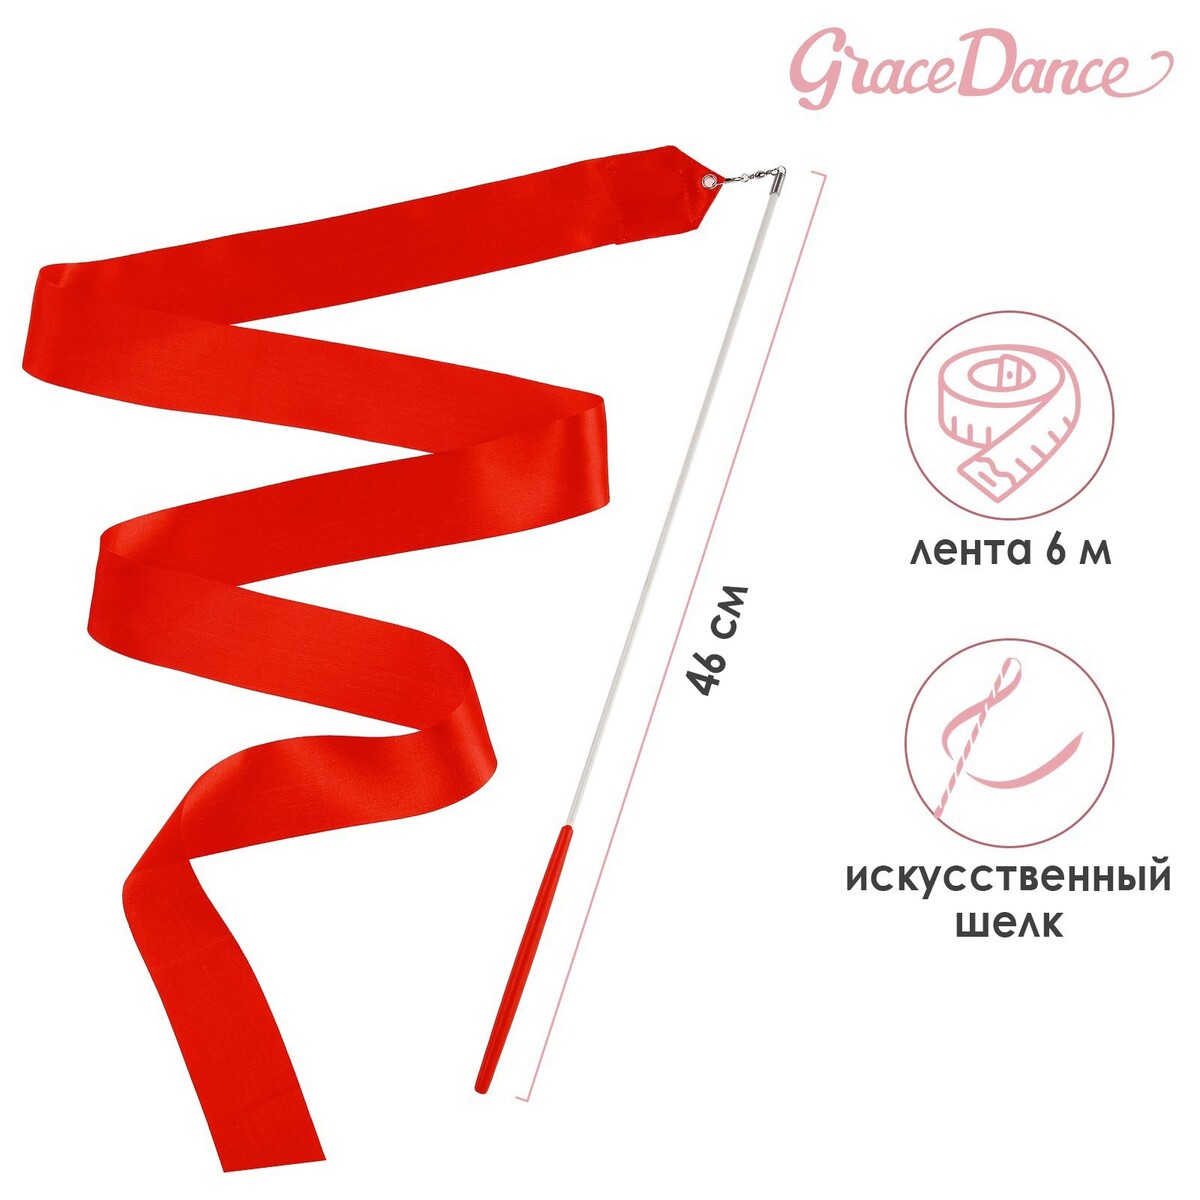 Лента для художественной гимнастики с палочкой grace dance, 6 м, цвет красный лента гимнастическая с палочкой grace dance 4 м оранжевый